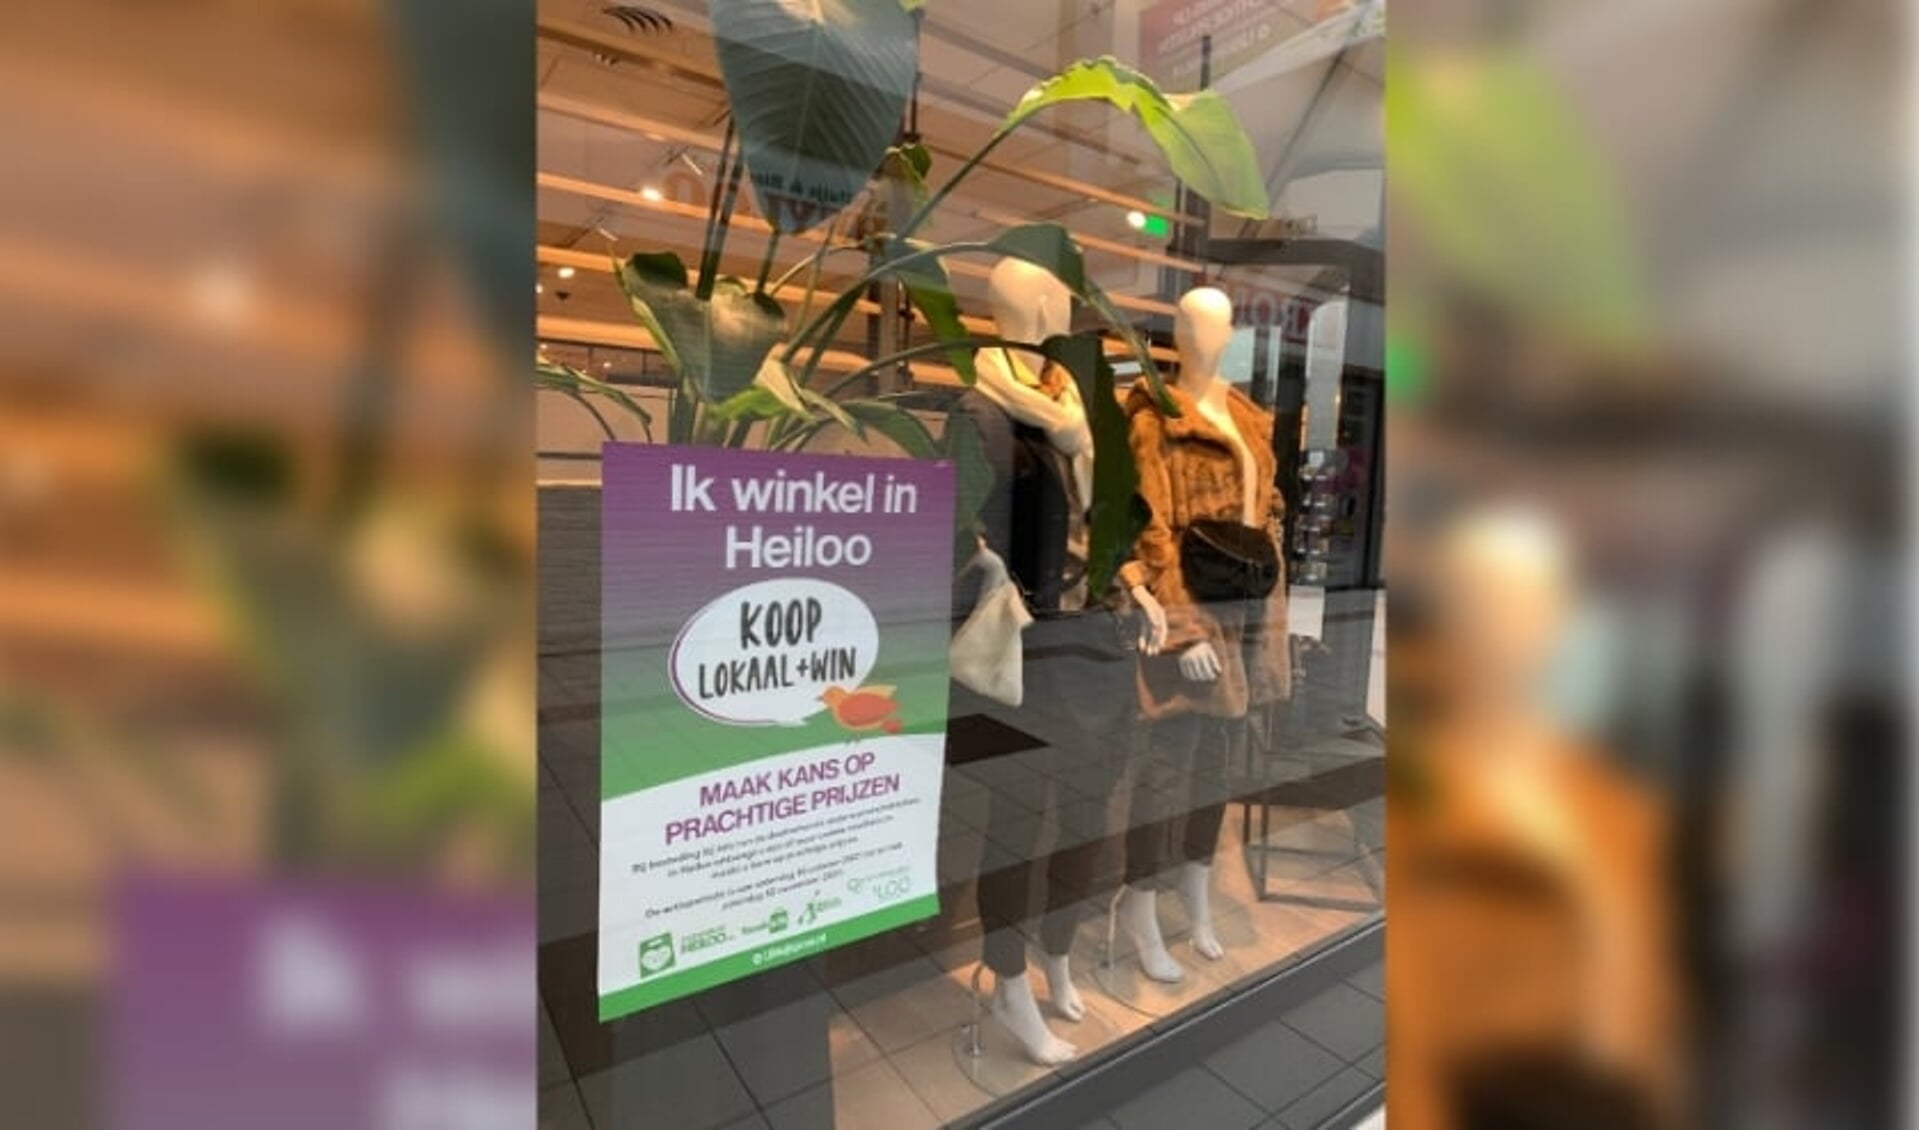 Poster 'Ik winkel in Heiloo' in de etalage van Zuss Women. (Foto: Lauryn de Haas)